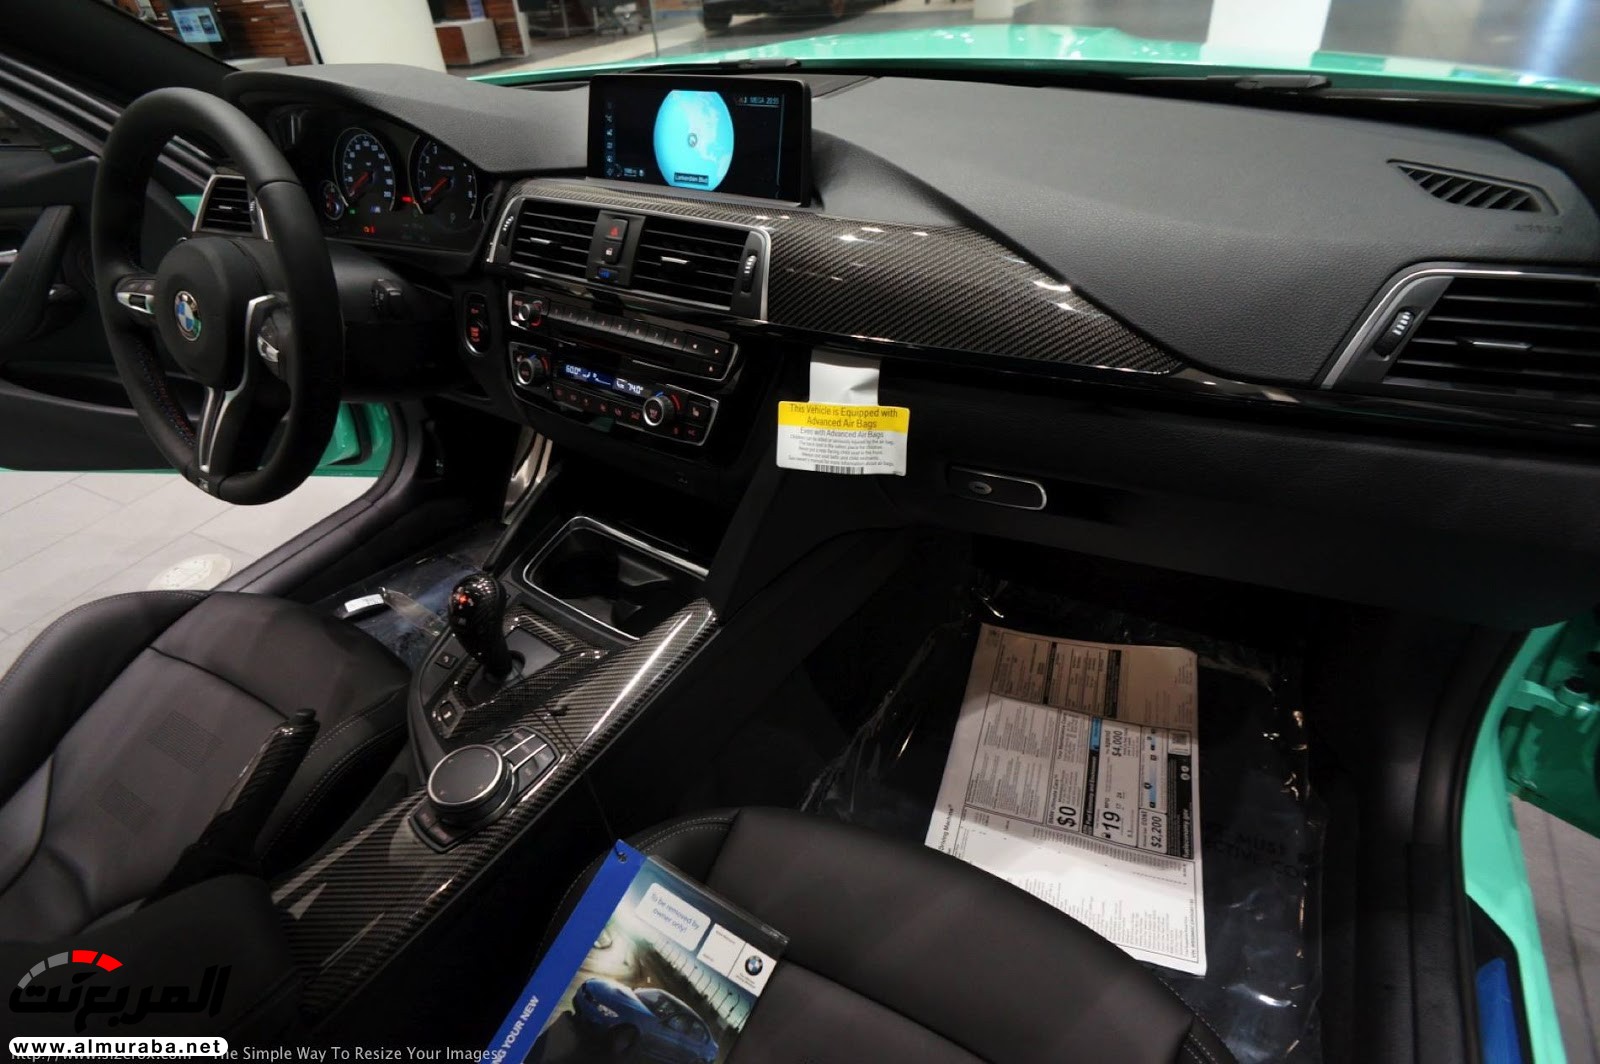 "بالصور" شاهد "بي إم دبليو" F80 M3 الخاصة بطلاء النعناع الأخضر BMW 123